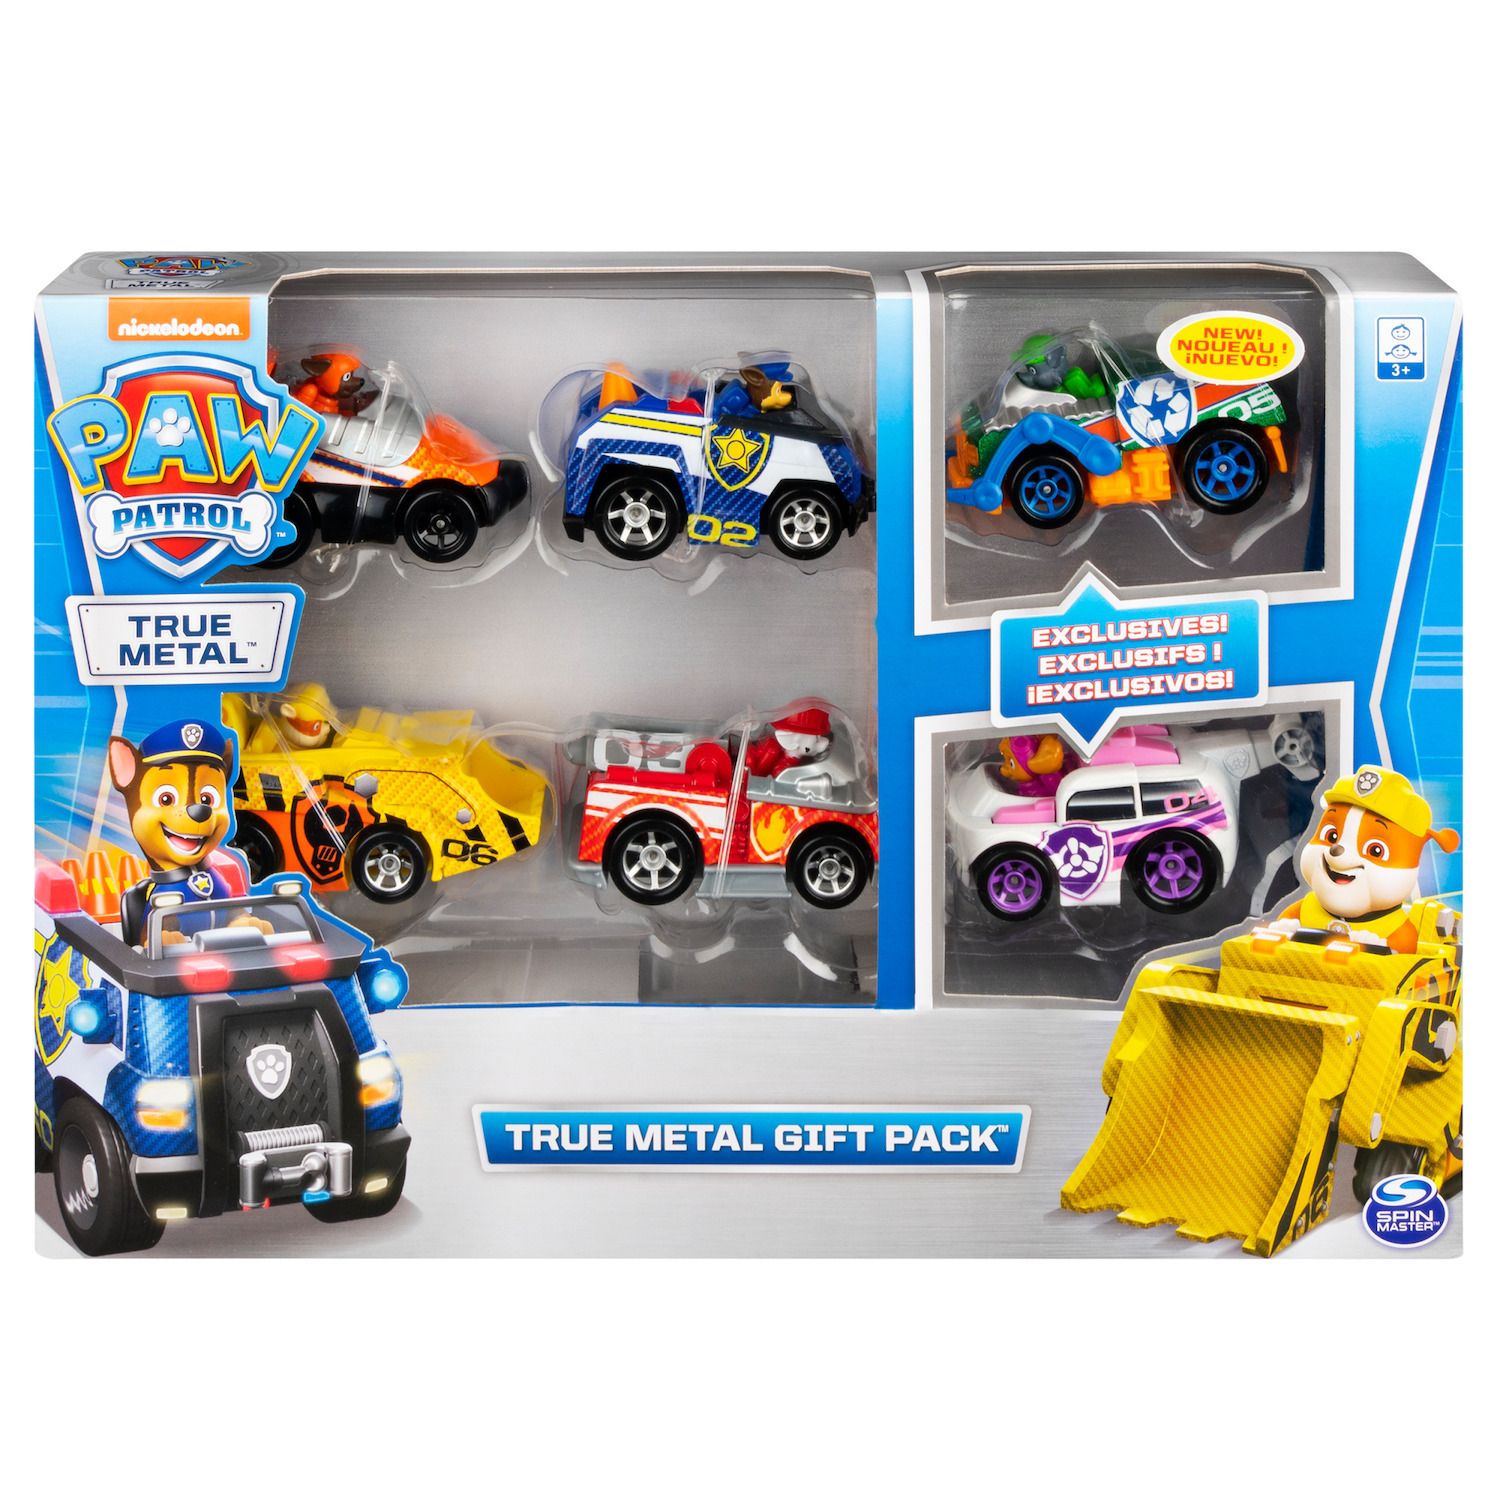 kohls toy trucks